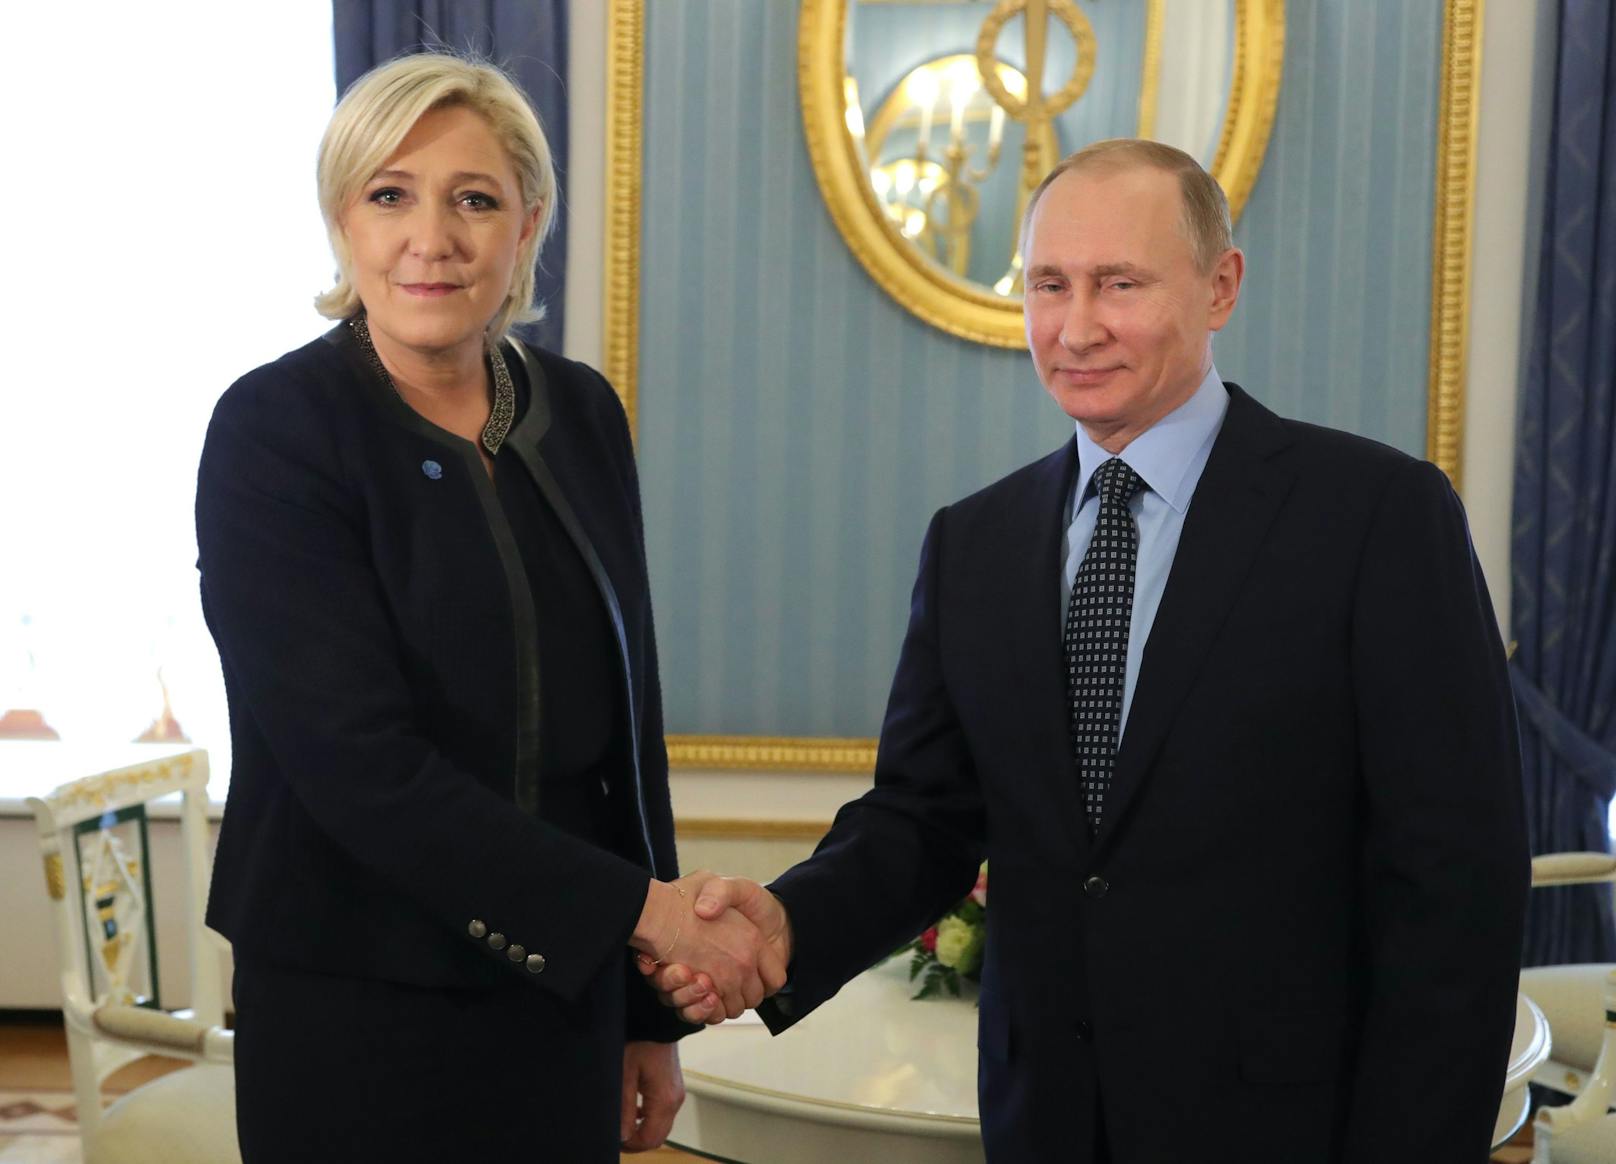 Le Pen gemeinsam mit dem russischen Präsidenten Wladimir Putin im Jahr 2017.